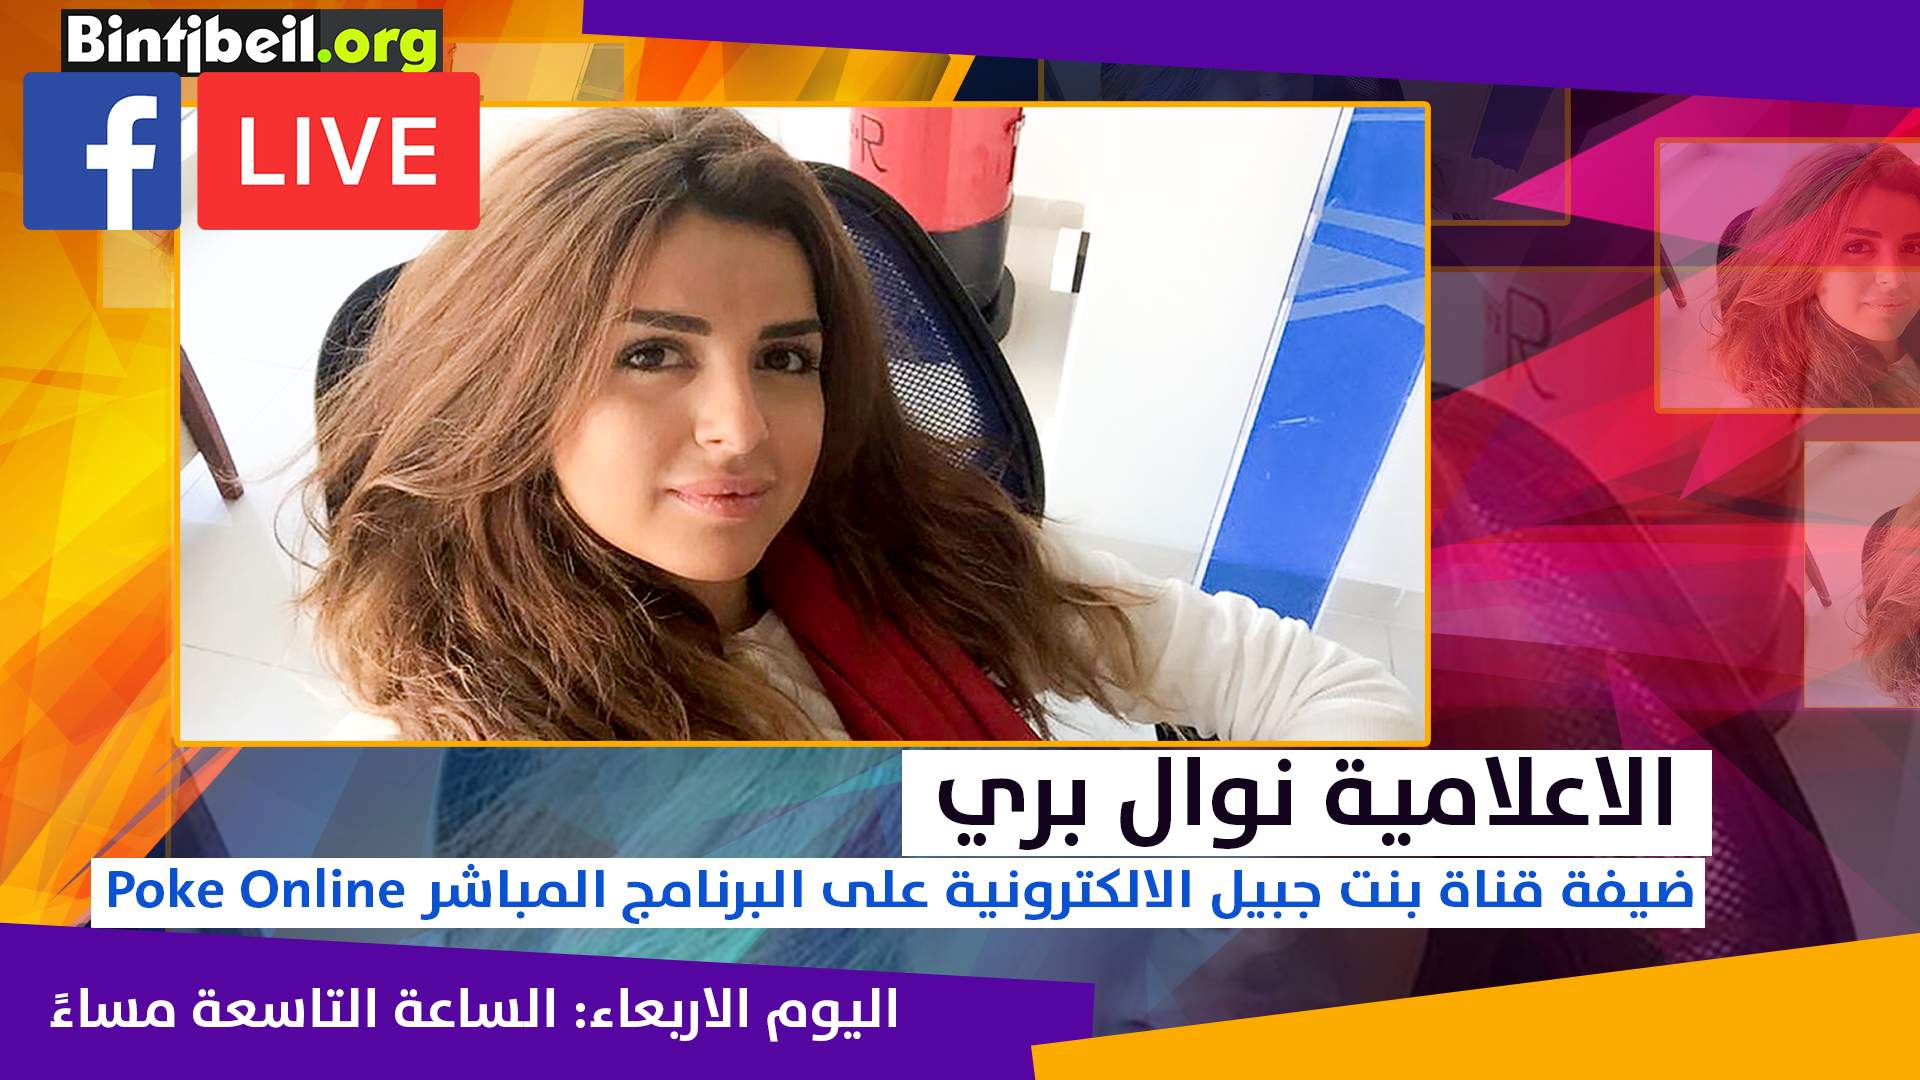 الاعلامية نوال بري تحل ضيفة برنامج Poke Online على قناة بنت جبيل الالكترونية مساء اليوم 